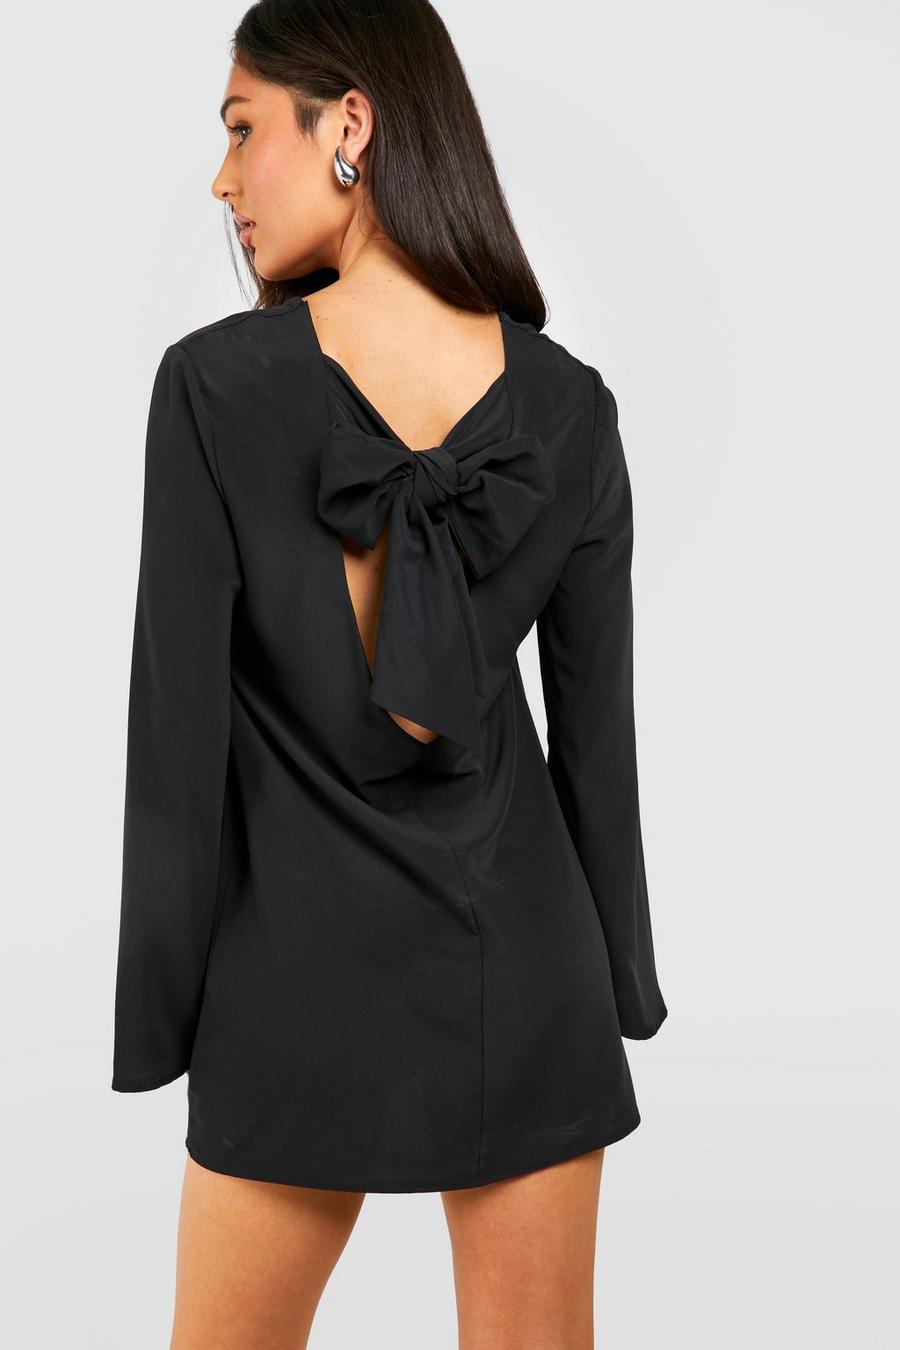 Black Petite Bow Detail Open Back Mini black Dress 